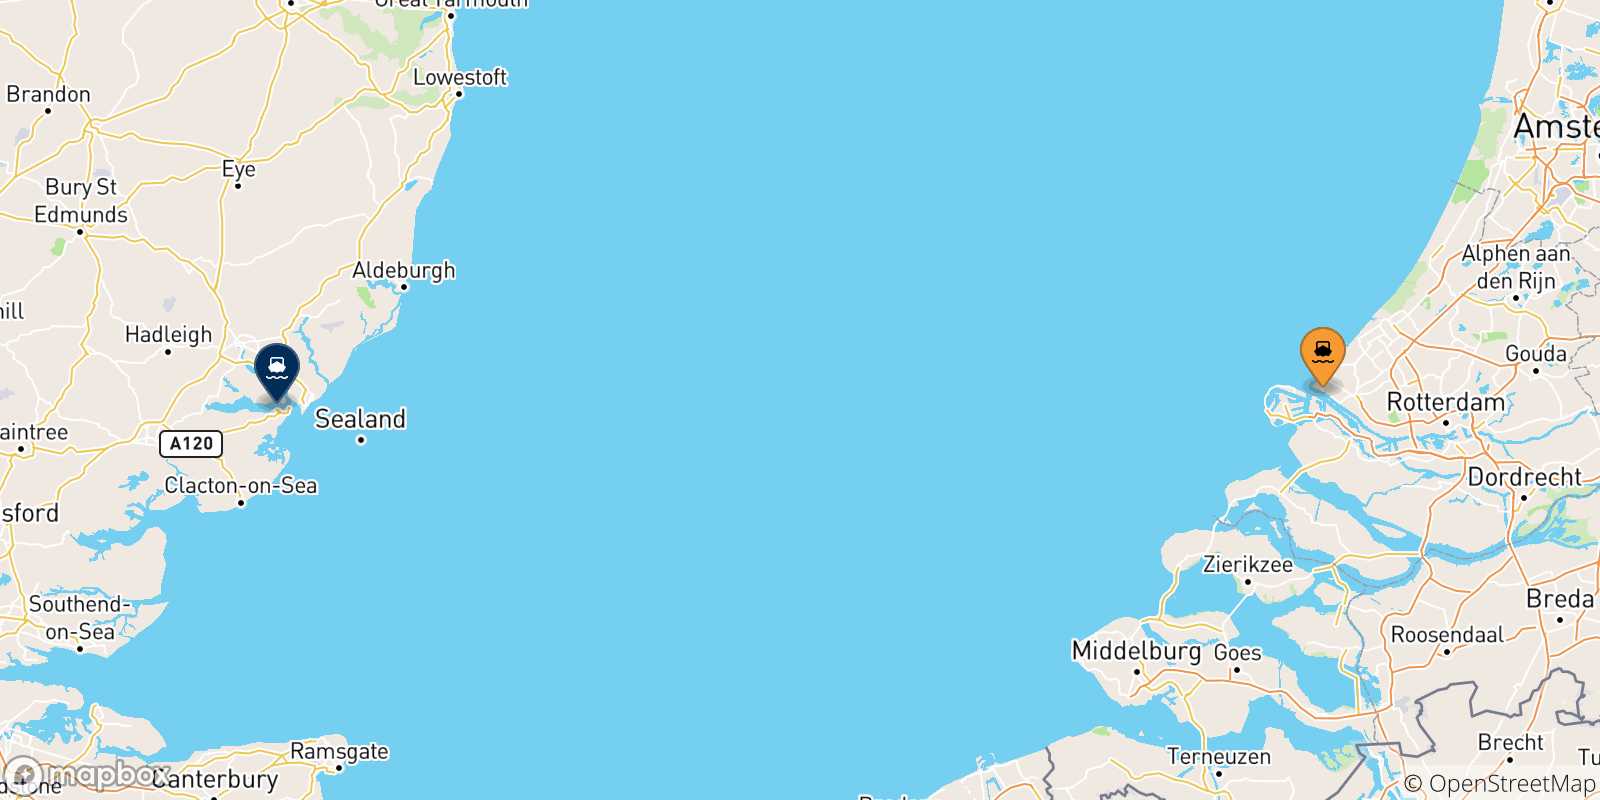 Mappa delle possibili rotte tra Hoek Van Holland e il Regno Unito